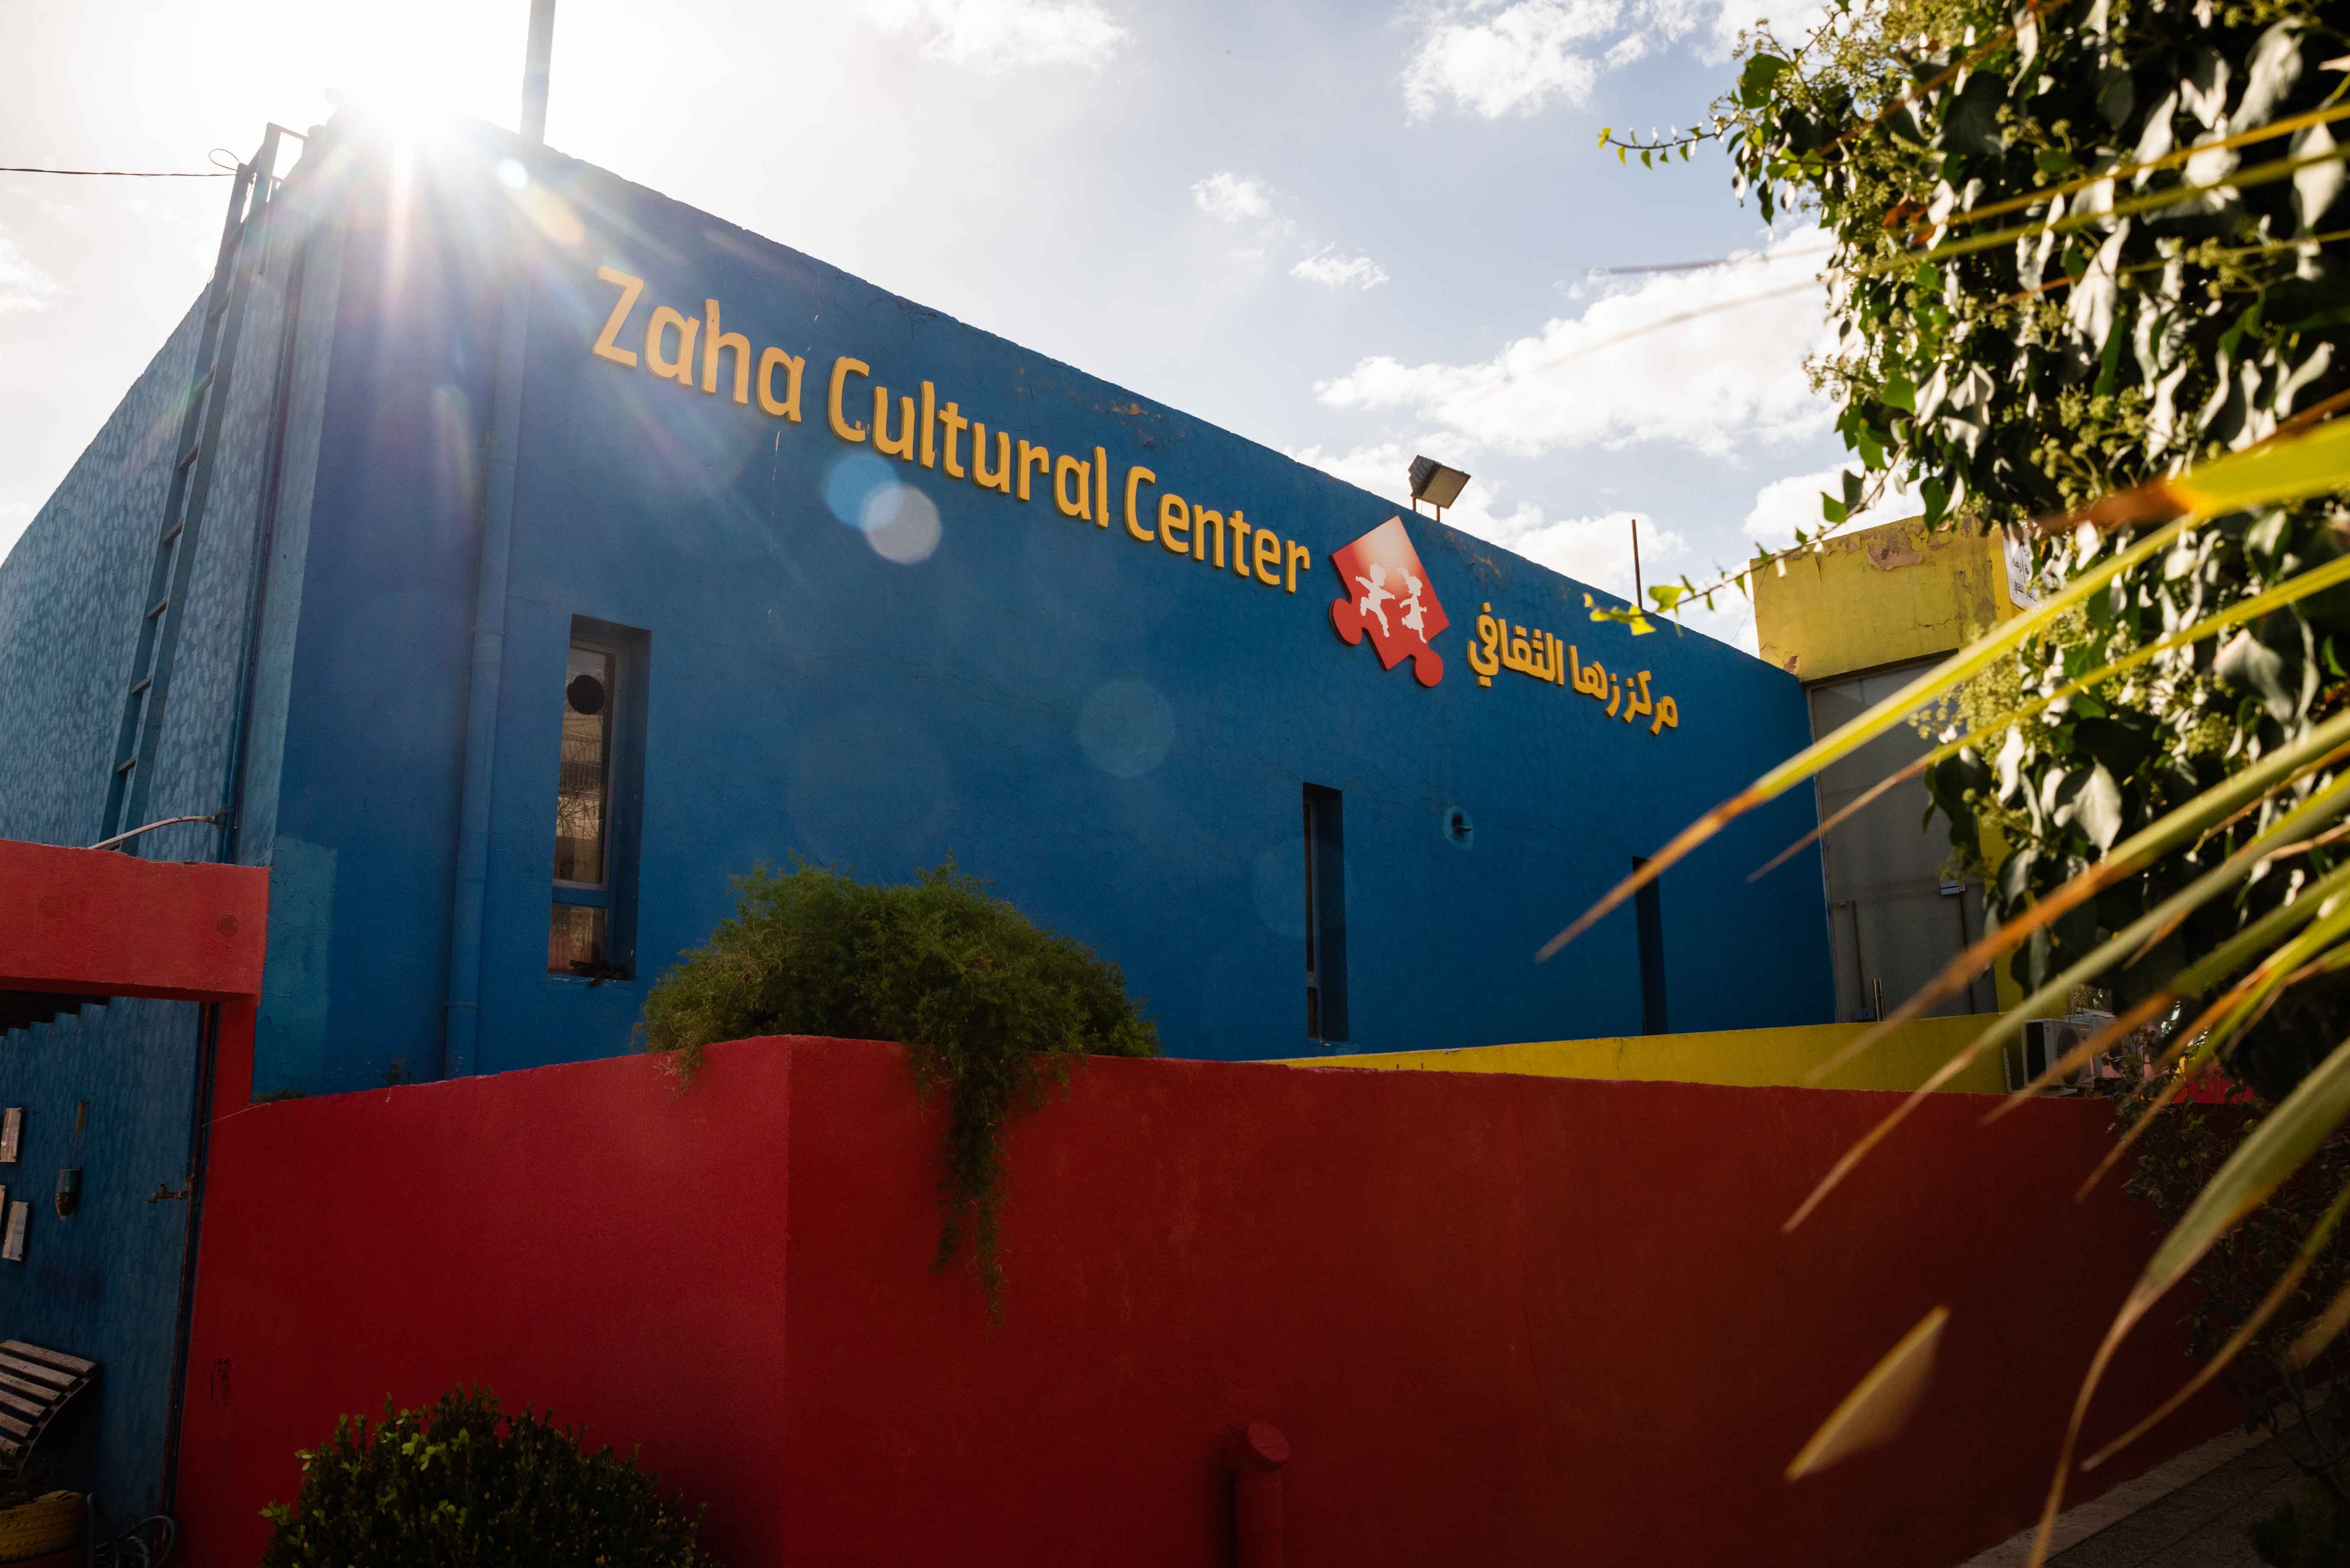 Zaha Cultural Center